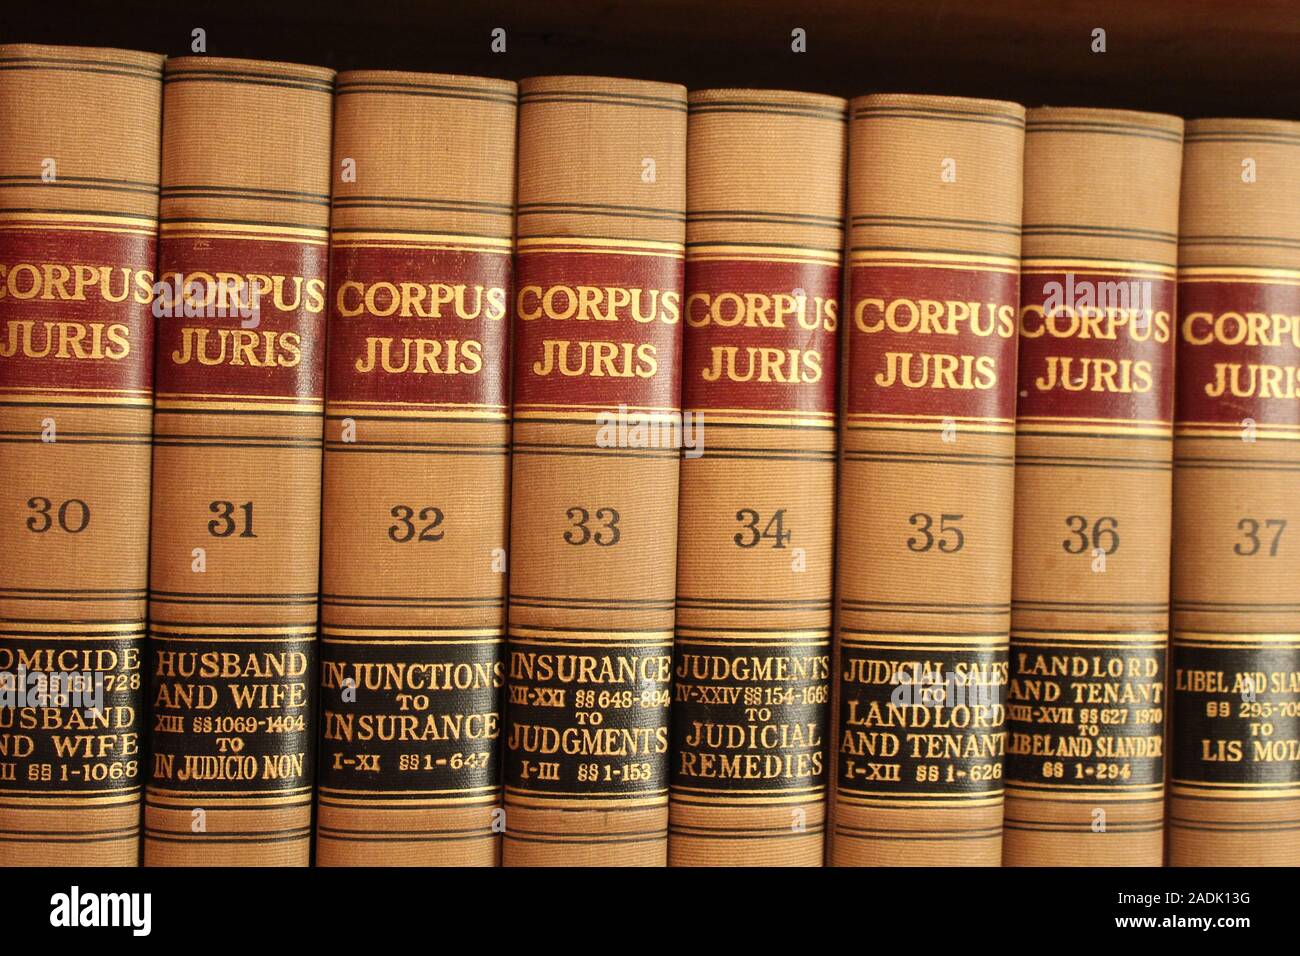 biblioteca de derecho 2adk13g - Biblioteca de Derecho